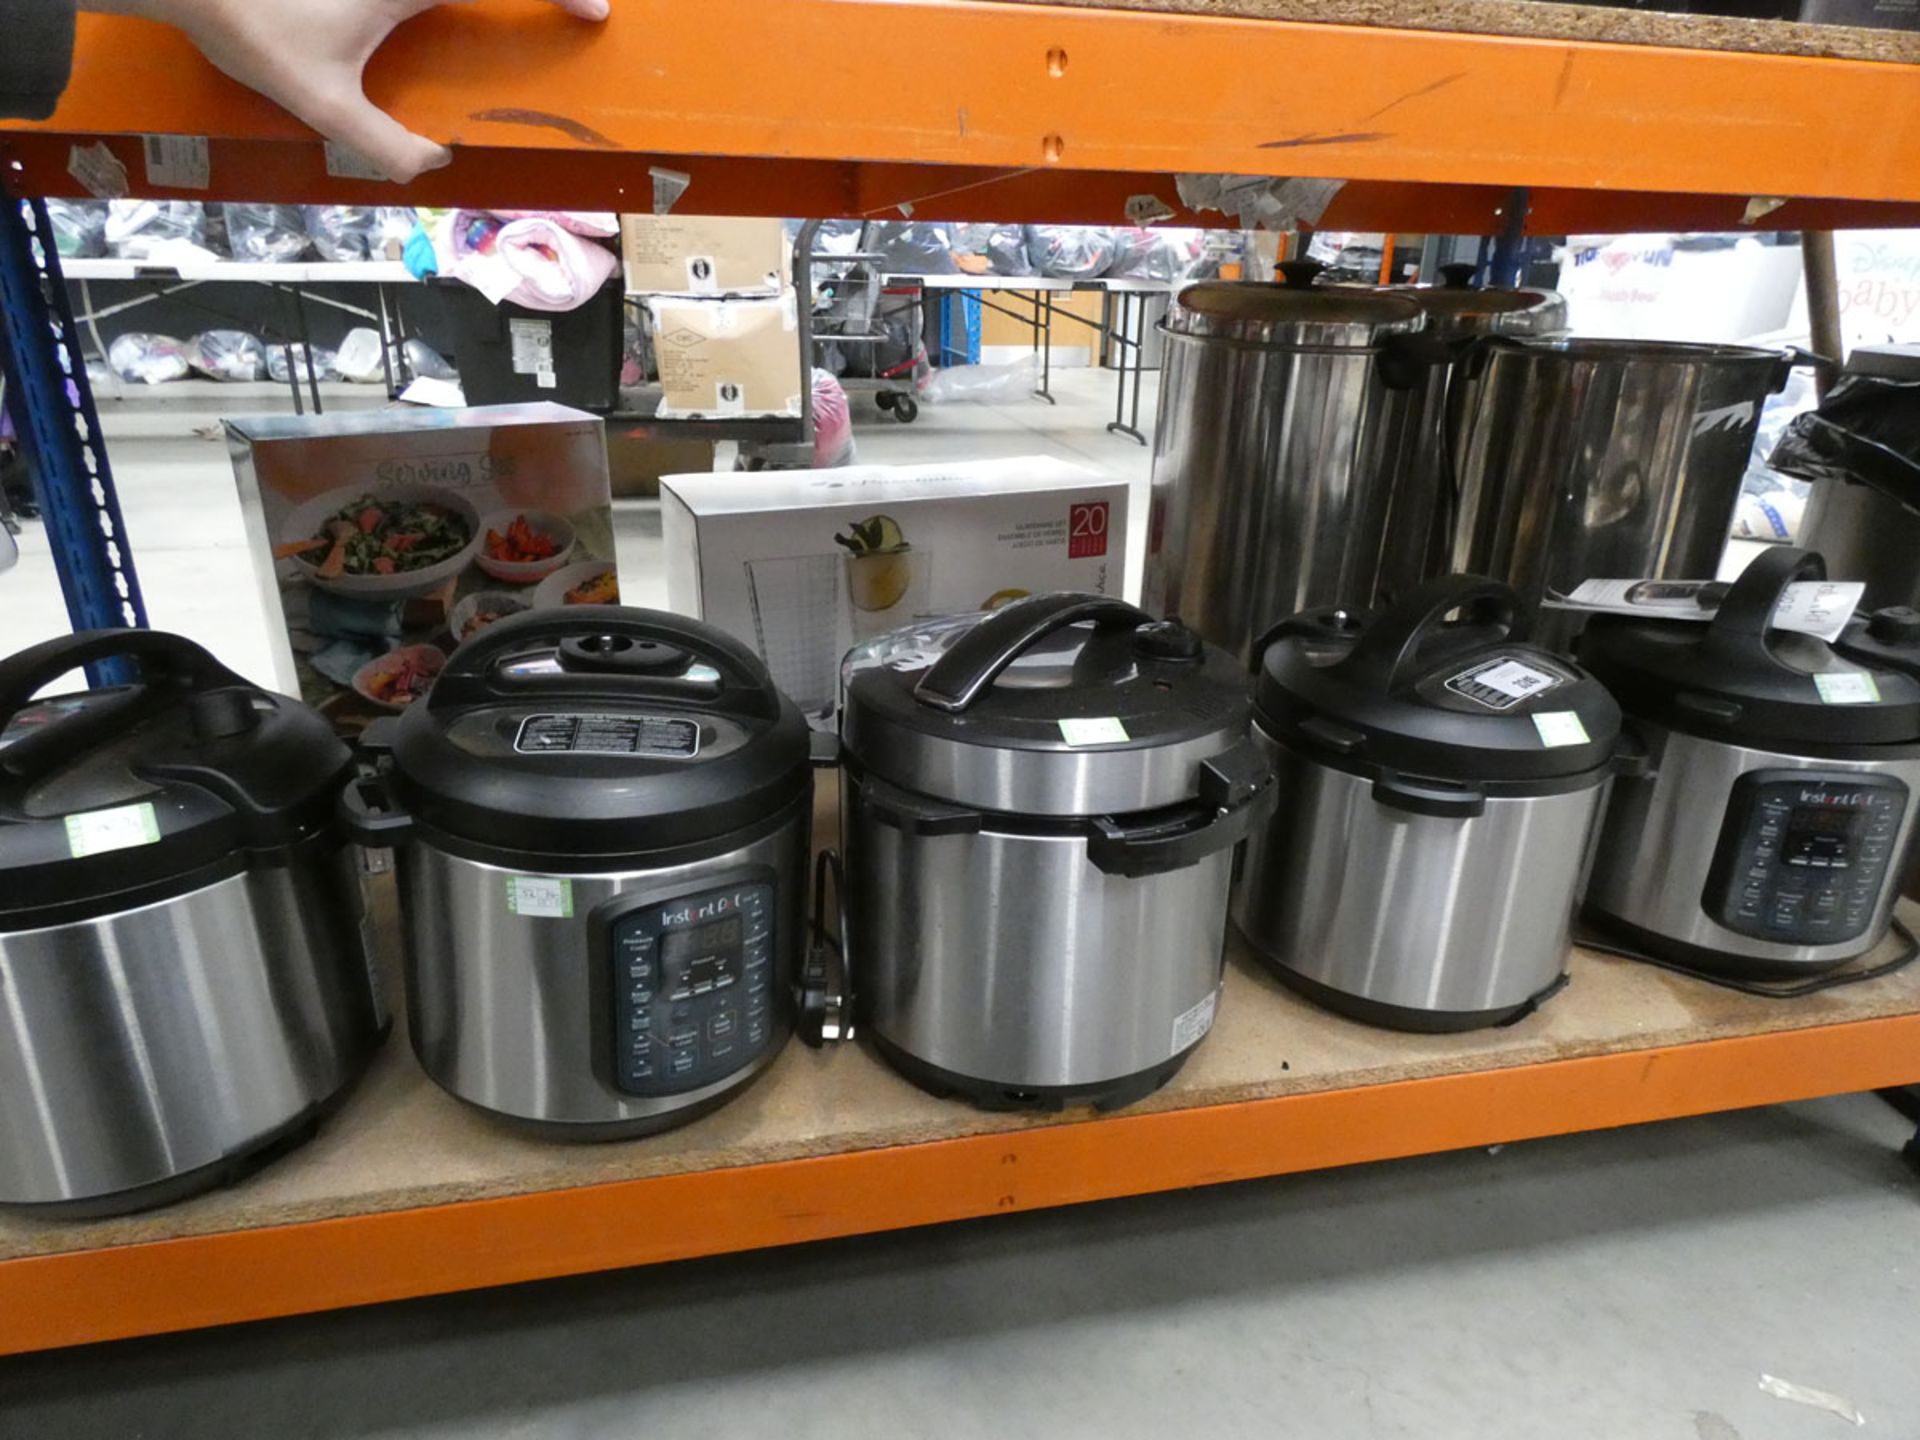 3044 - 4 unboxed Instant pots plus a pressure cooker